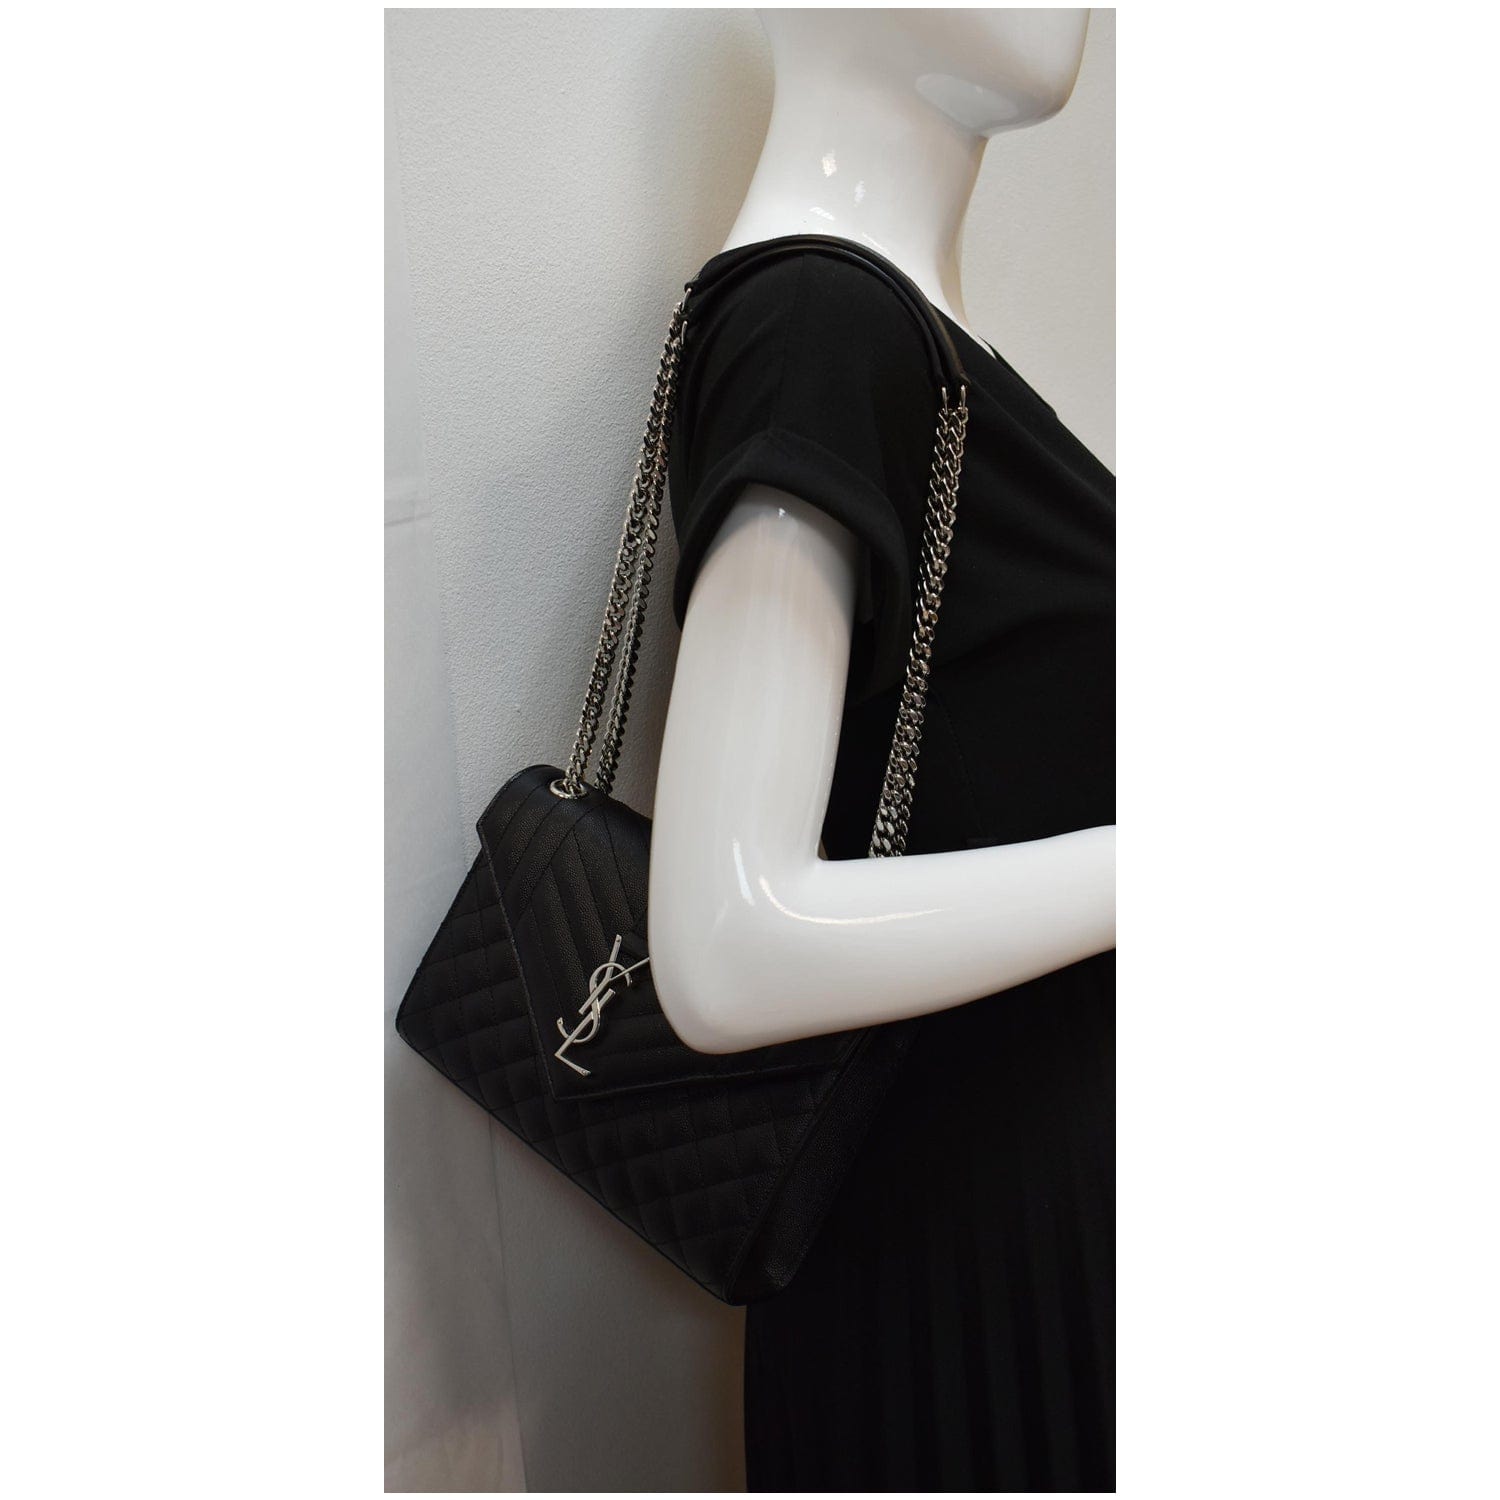 Authentic Saint Laurent YSL Medium Leather Chain Envelope Bag (M size,  Noir)